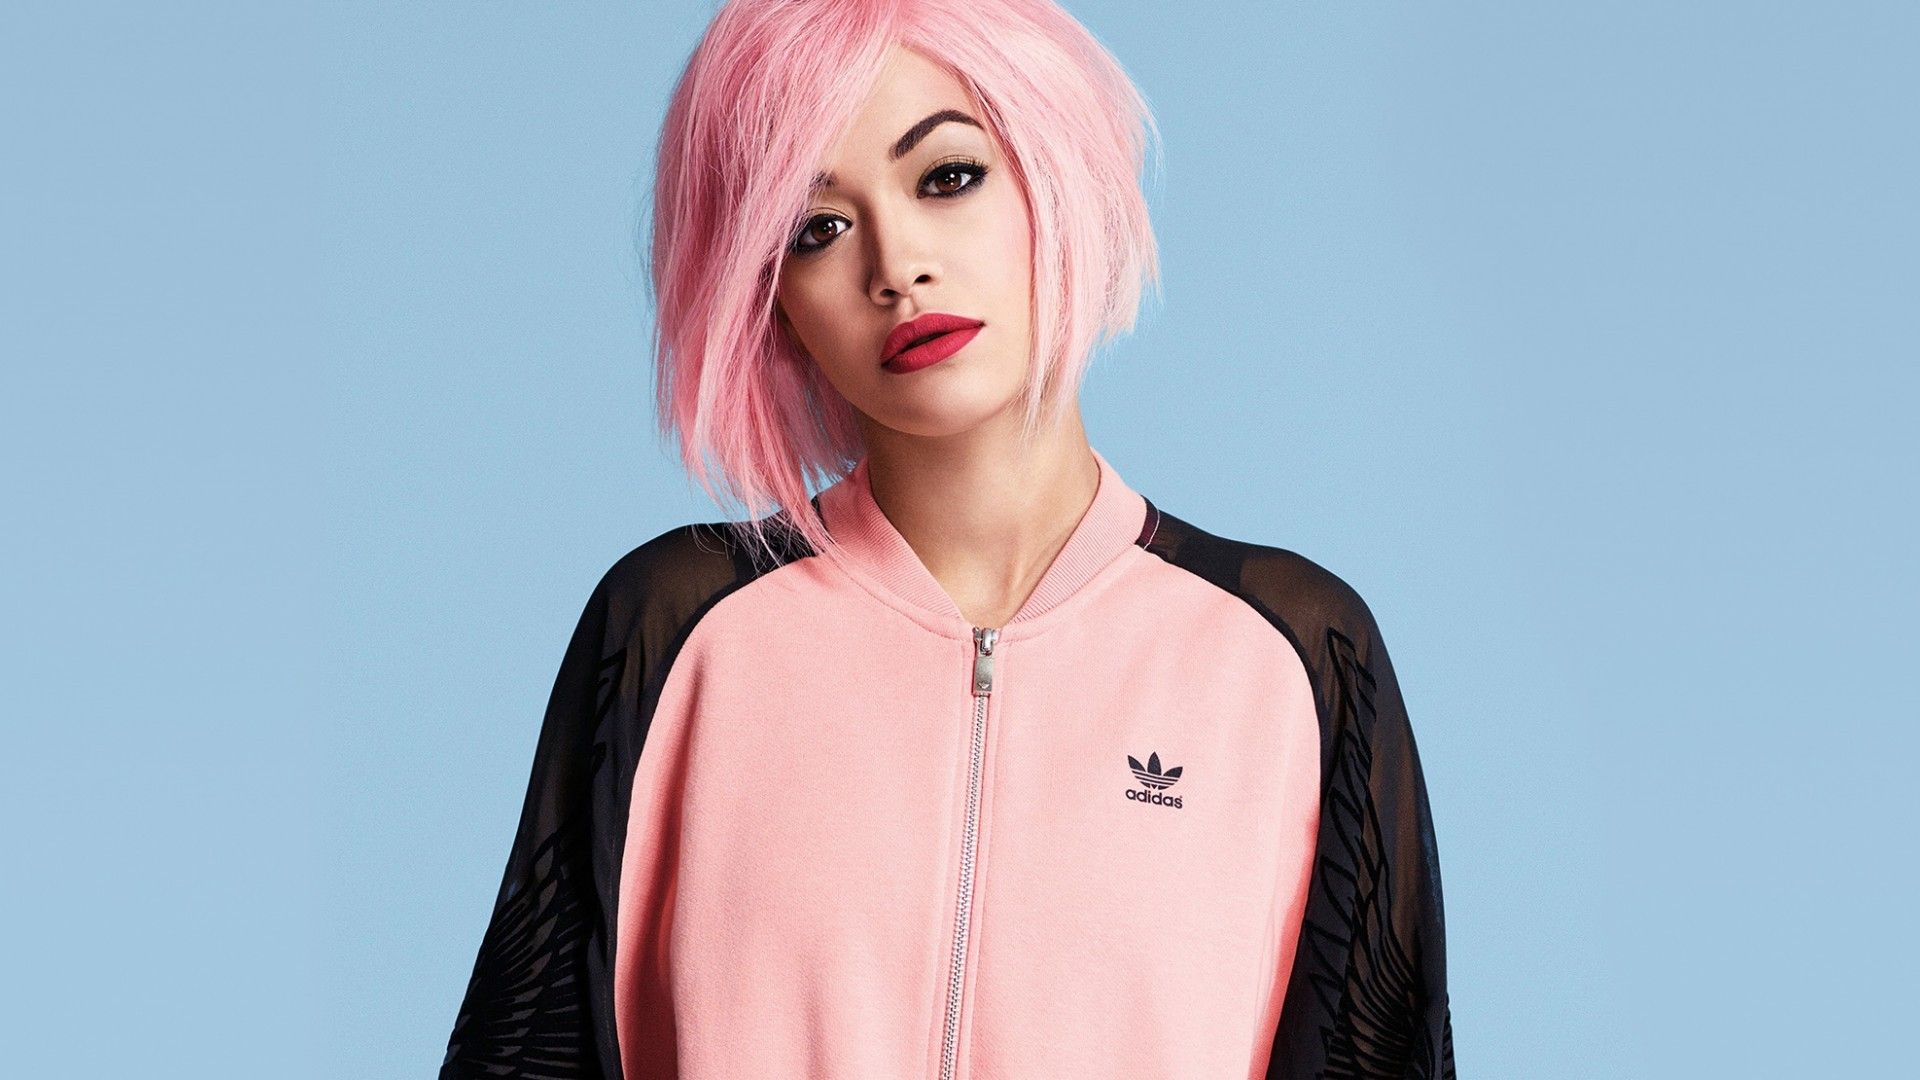 Rita Ora Pink Hair Image Wallpaper 64605 1920x1080px